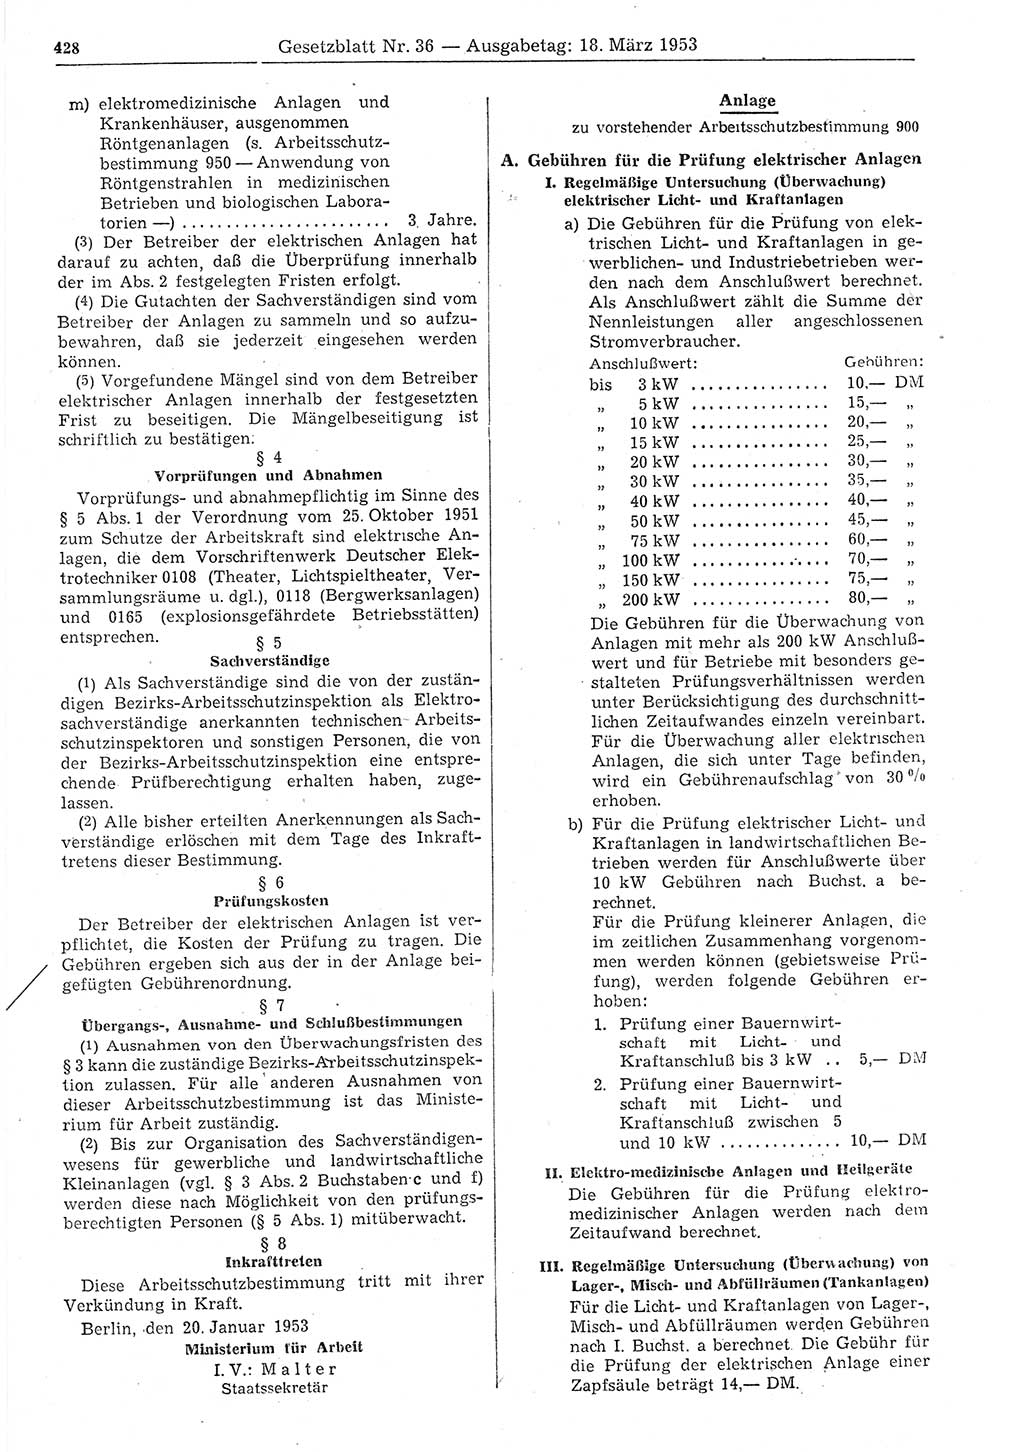 Gesetzblatt (GBl.) der Deutschen Demokratischen Republik (DDR) 1953, Seite 428 (GBl. DDR 1953, S. 428)